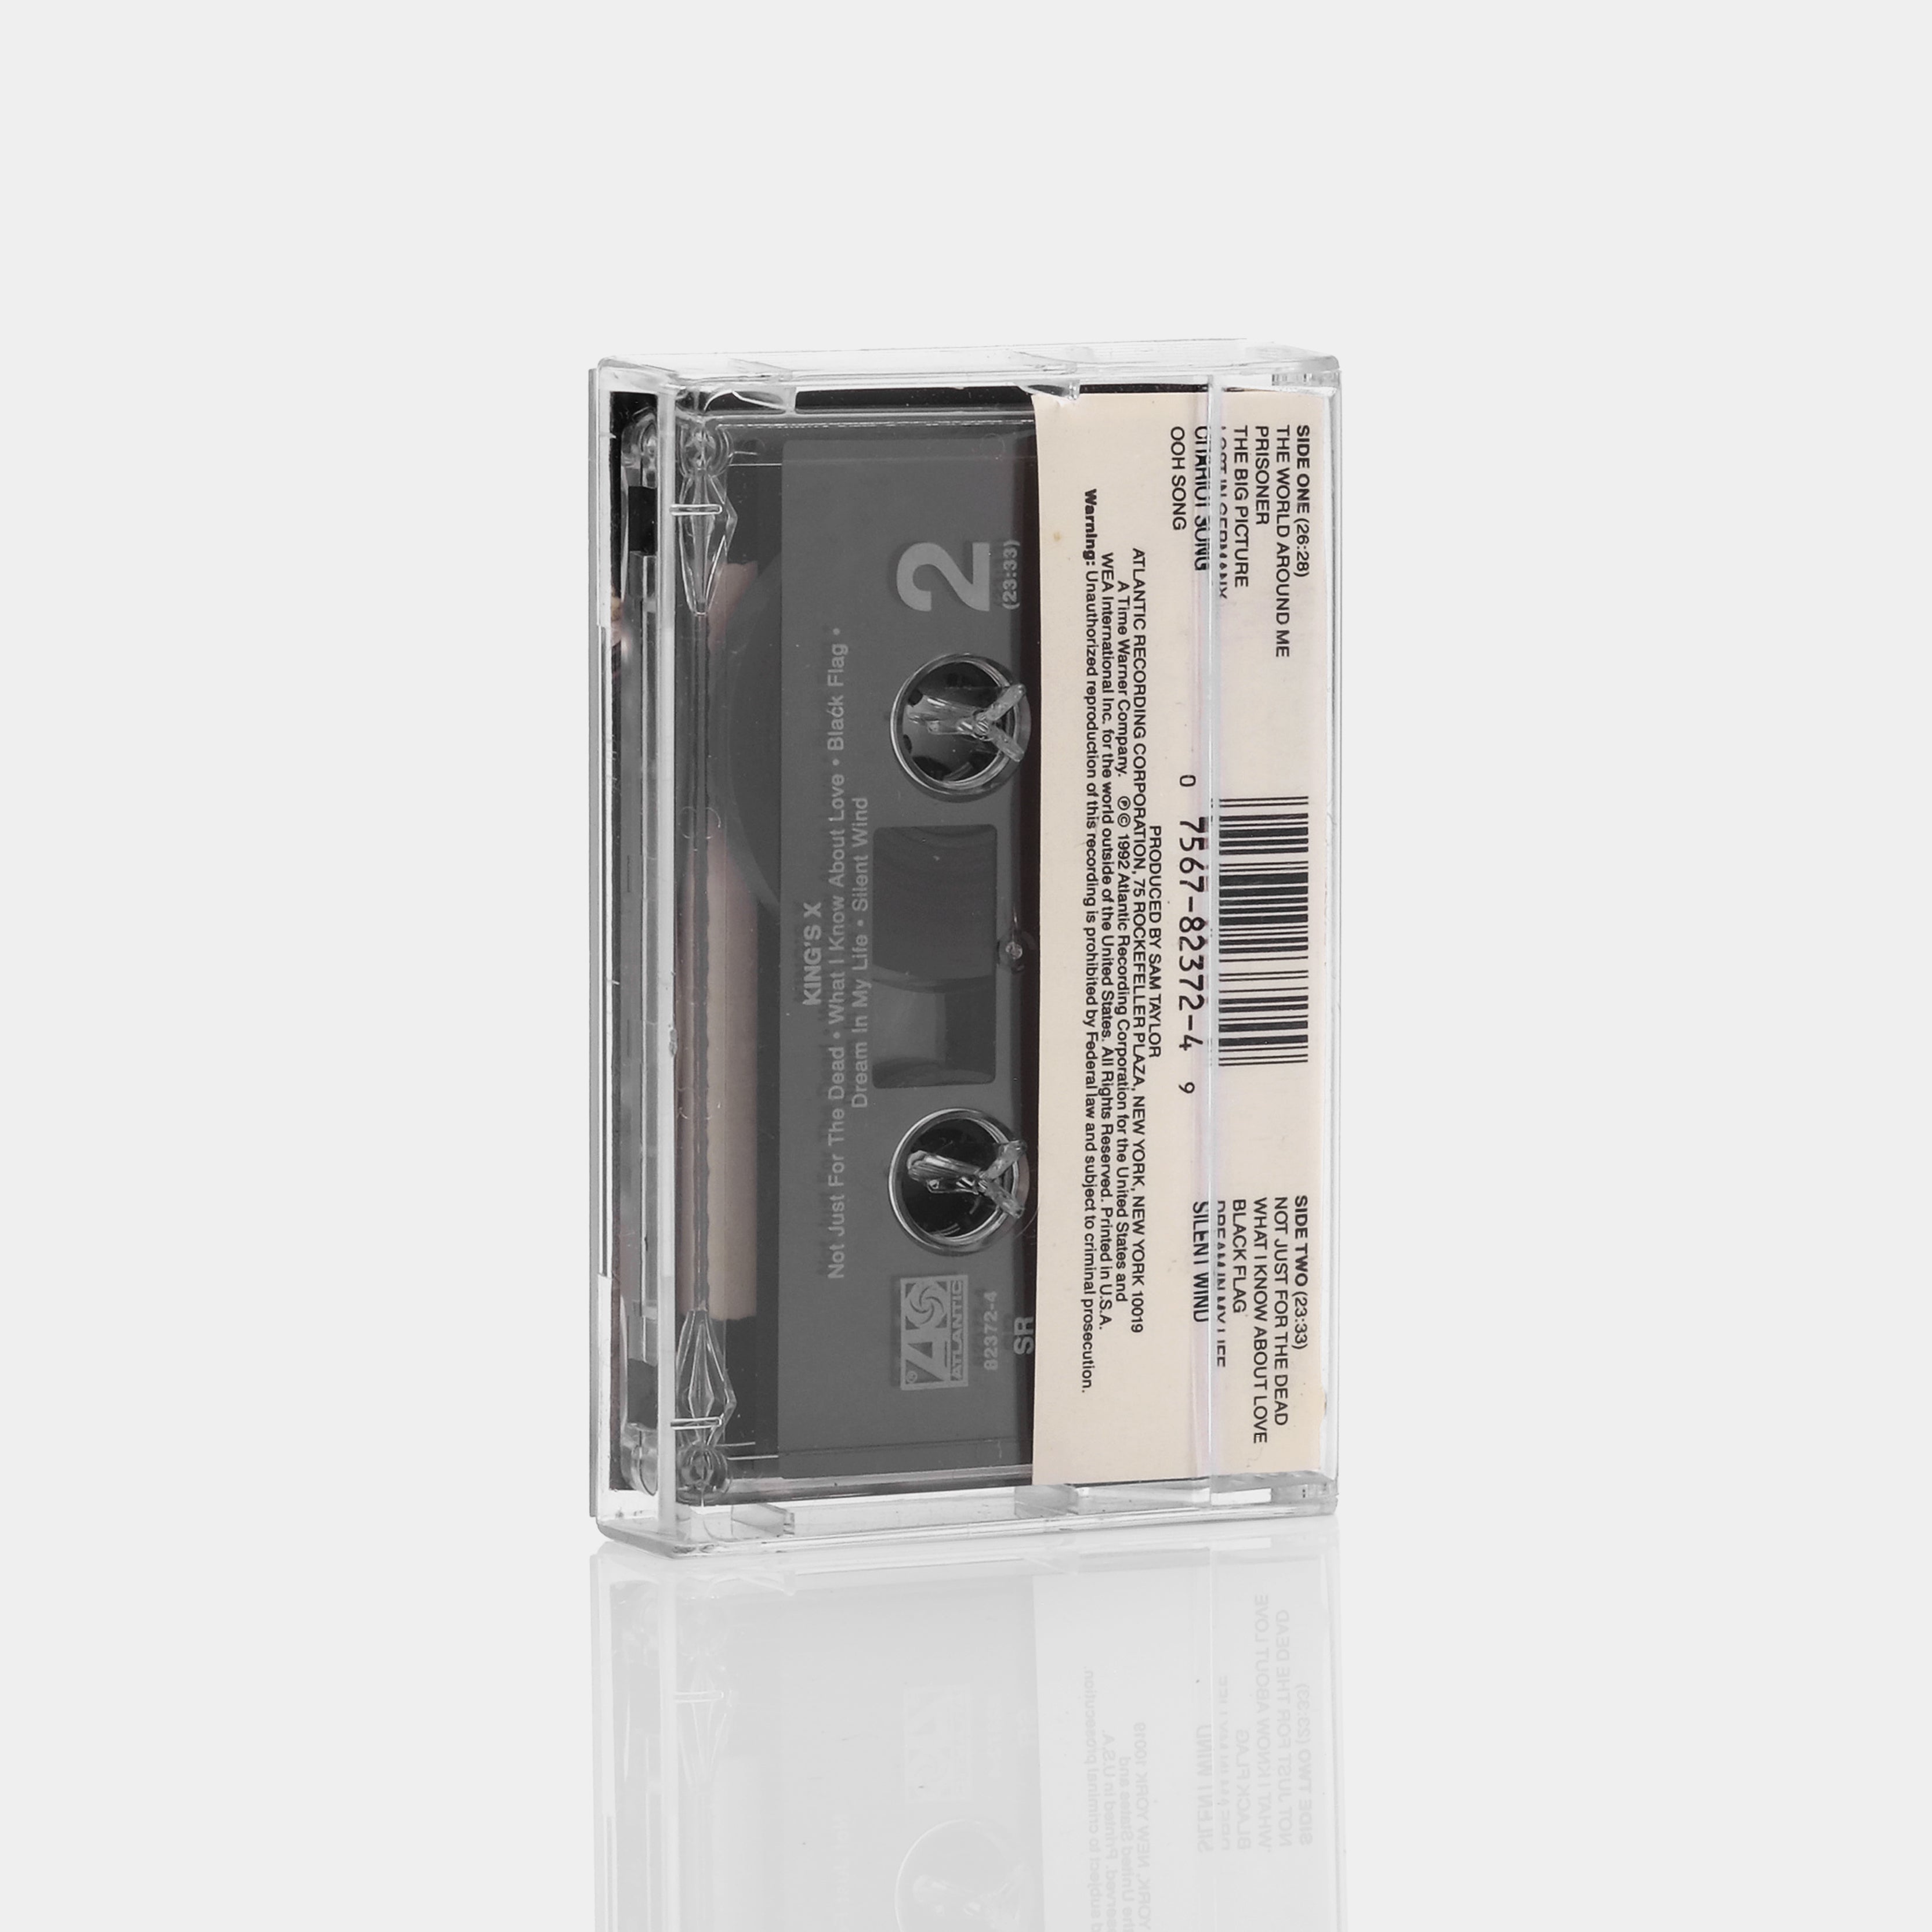 King's X - King's X Cassette Tape